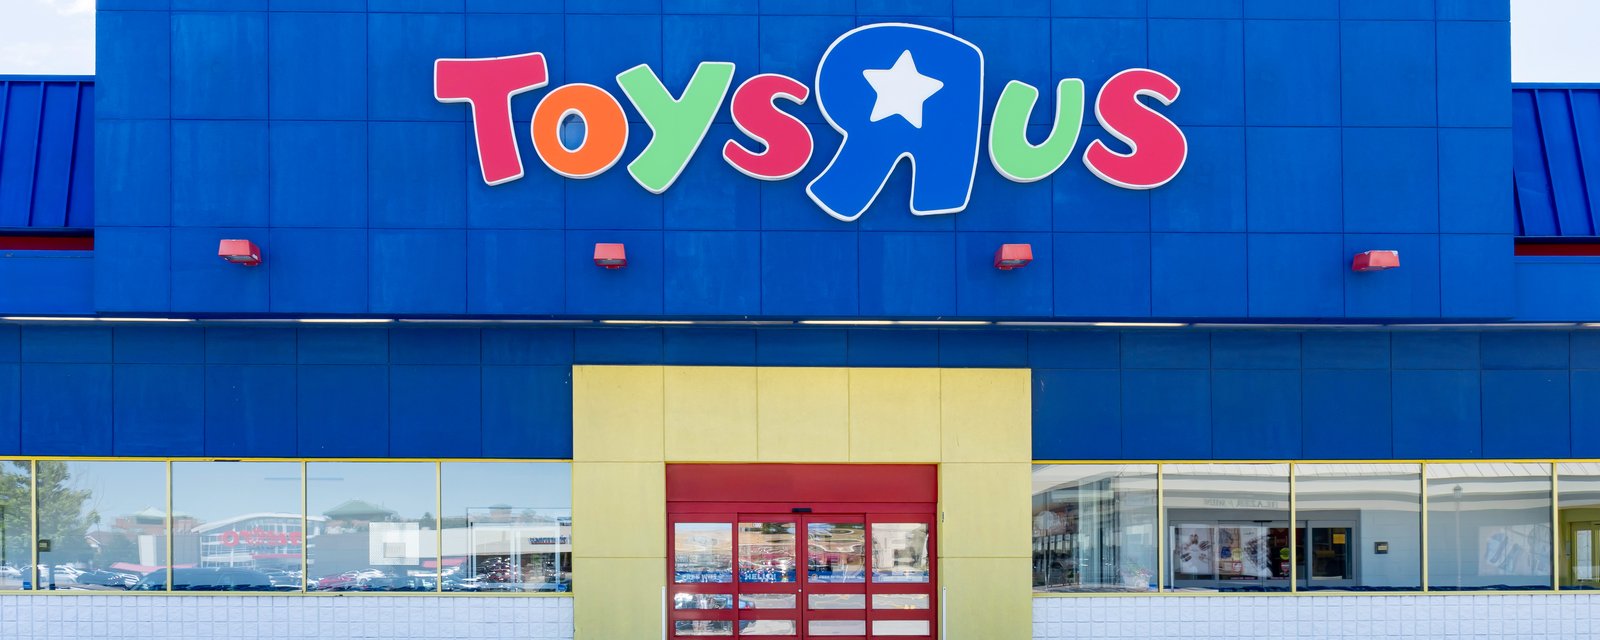 Toys “R” Us va ouvrir de nouveaux magasins au Québec et ailleurs au pays